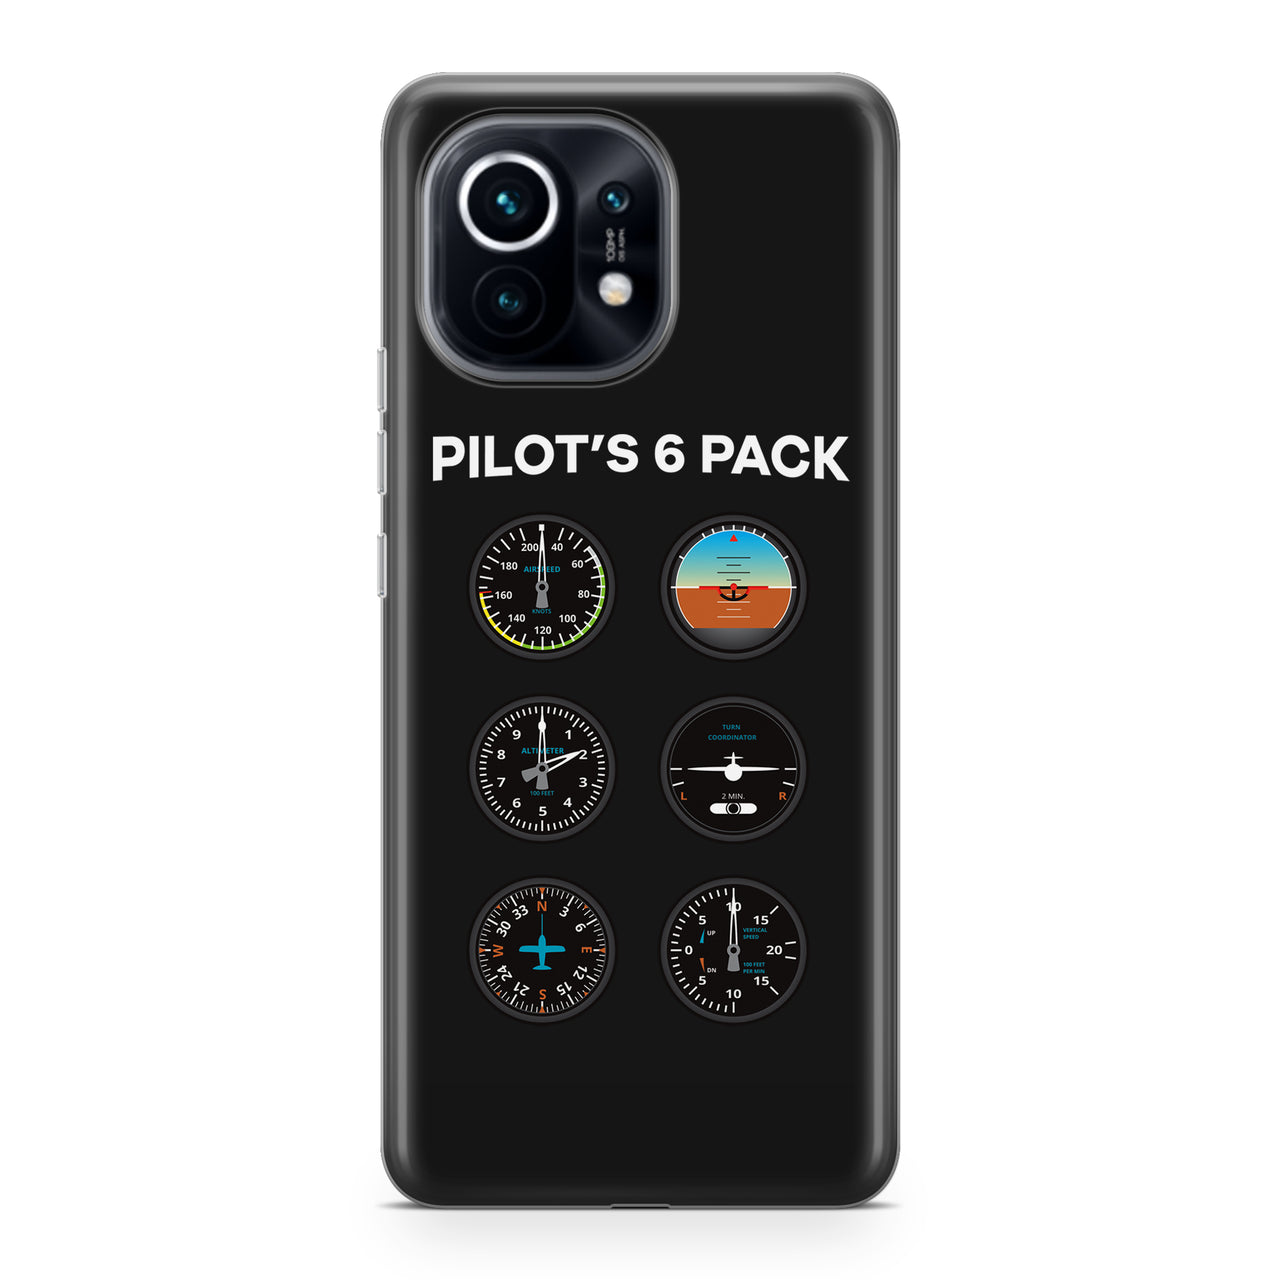 Pilot's 6 Pack Designed Xiaomi Cases